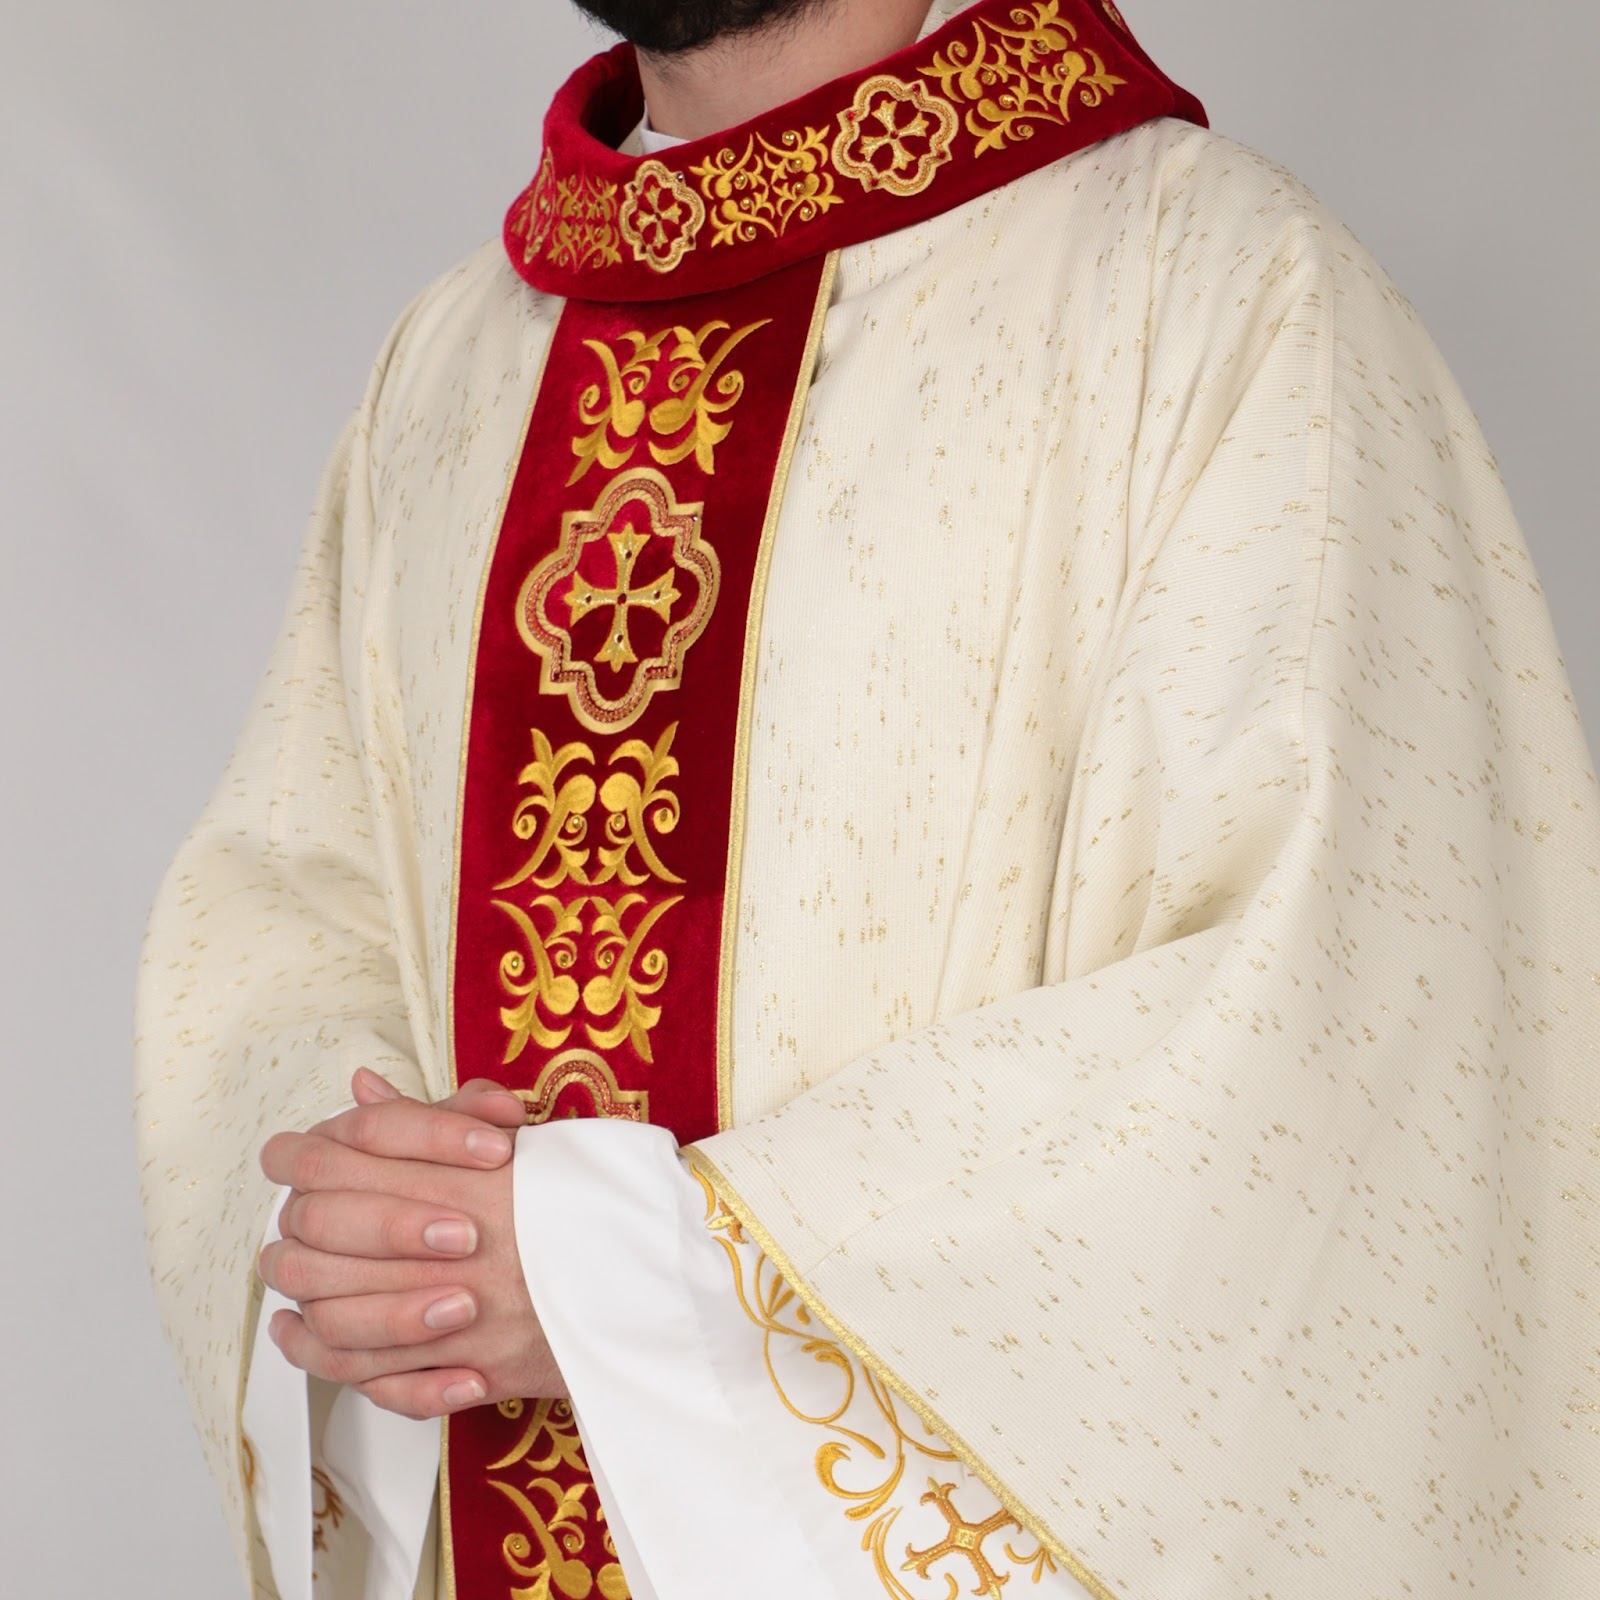 Renove o guarda-roupa litúrgico com estolas de cores litúrgicas